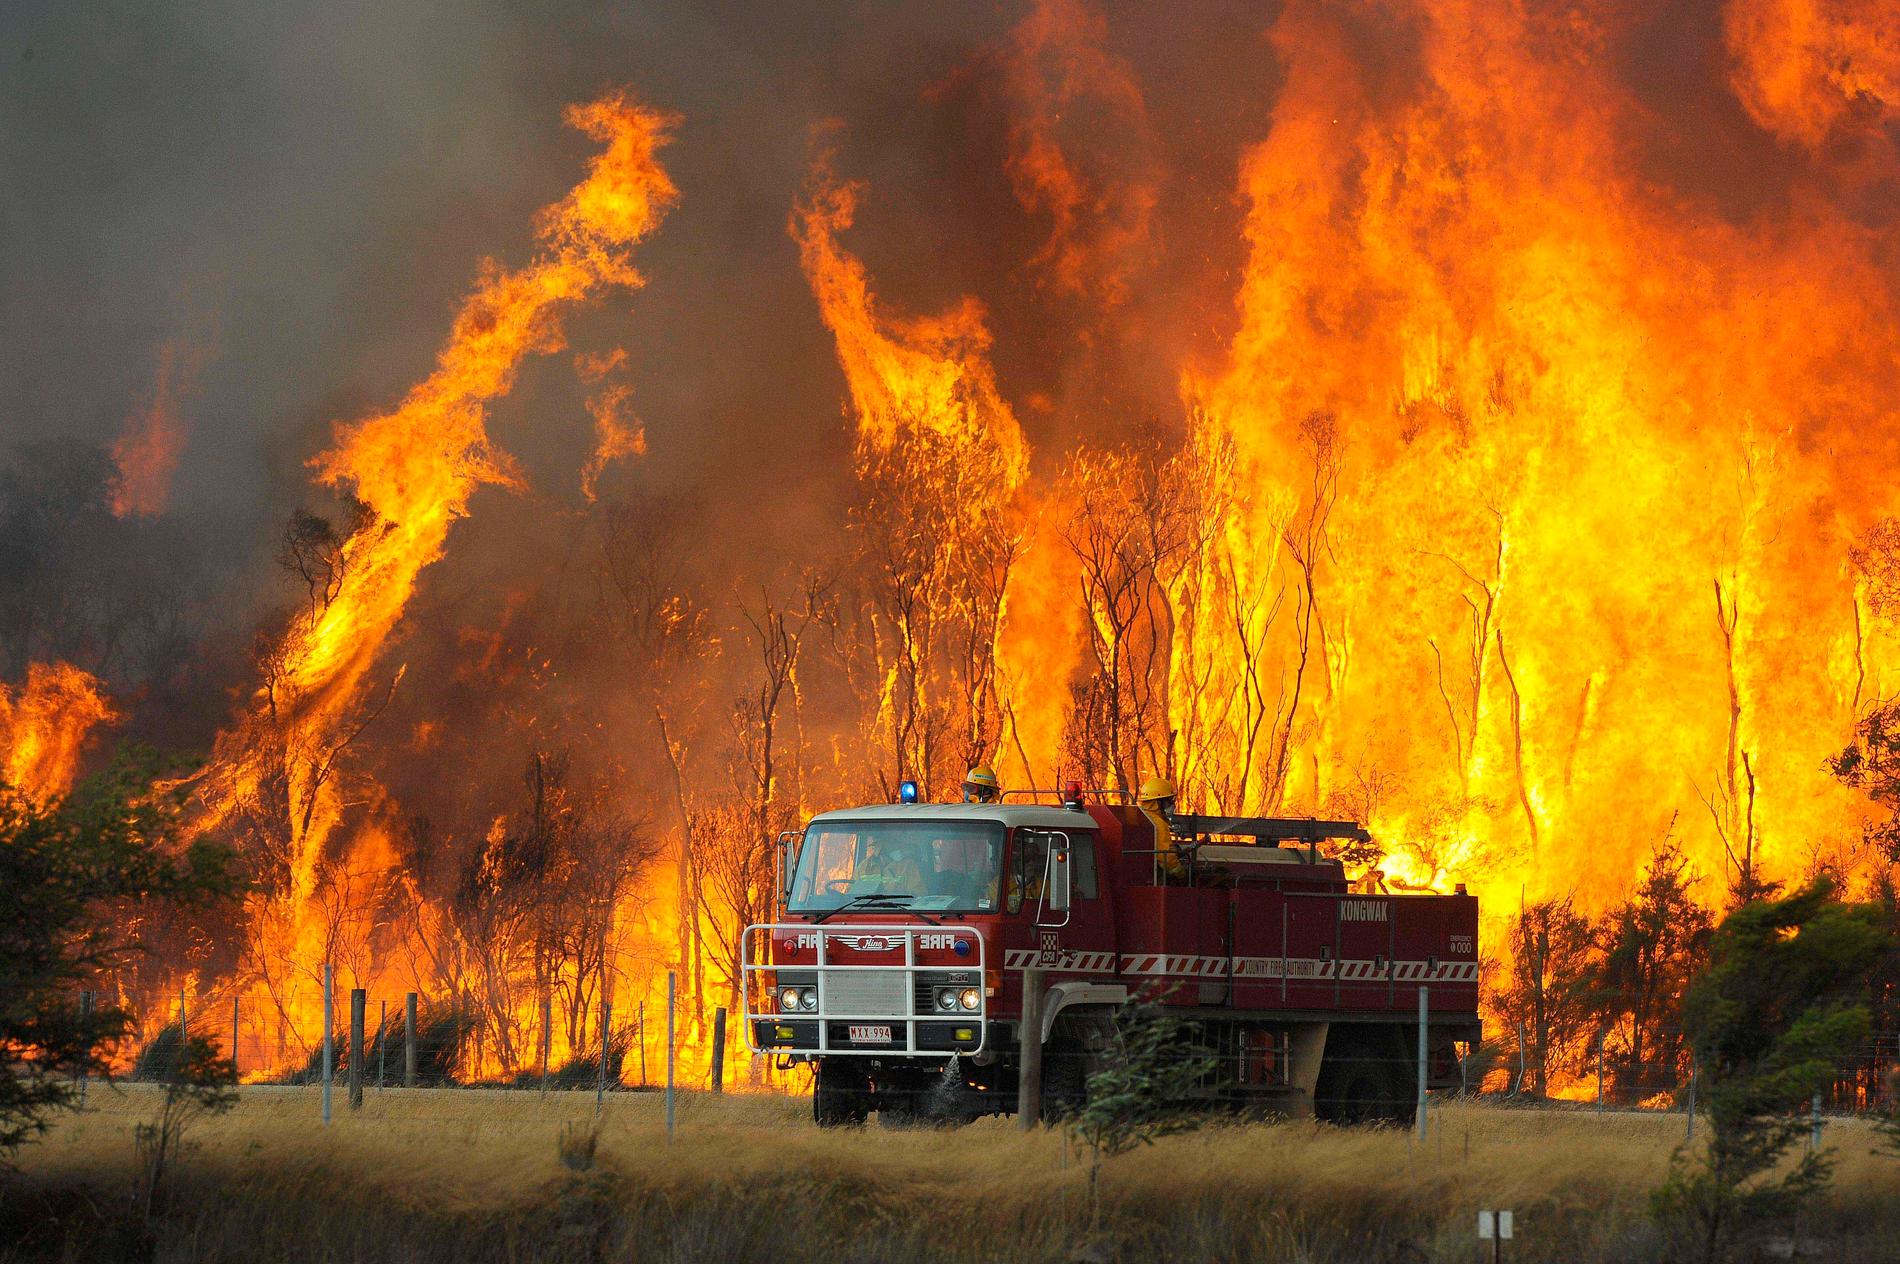 Samtidigt som Australien drabbas av historiskt omfattande skogsbränder röstar befolkningen på en klimatförnekare. Räcker inte demokratin till för att rädda klimatet? Kajsa Ekis Ekman är inte nöjd med svaret hon får i boken ”Upphettning”.